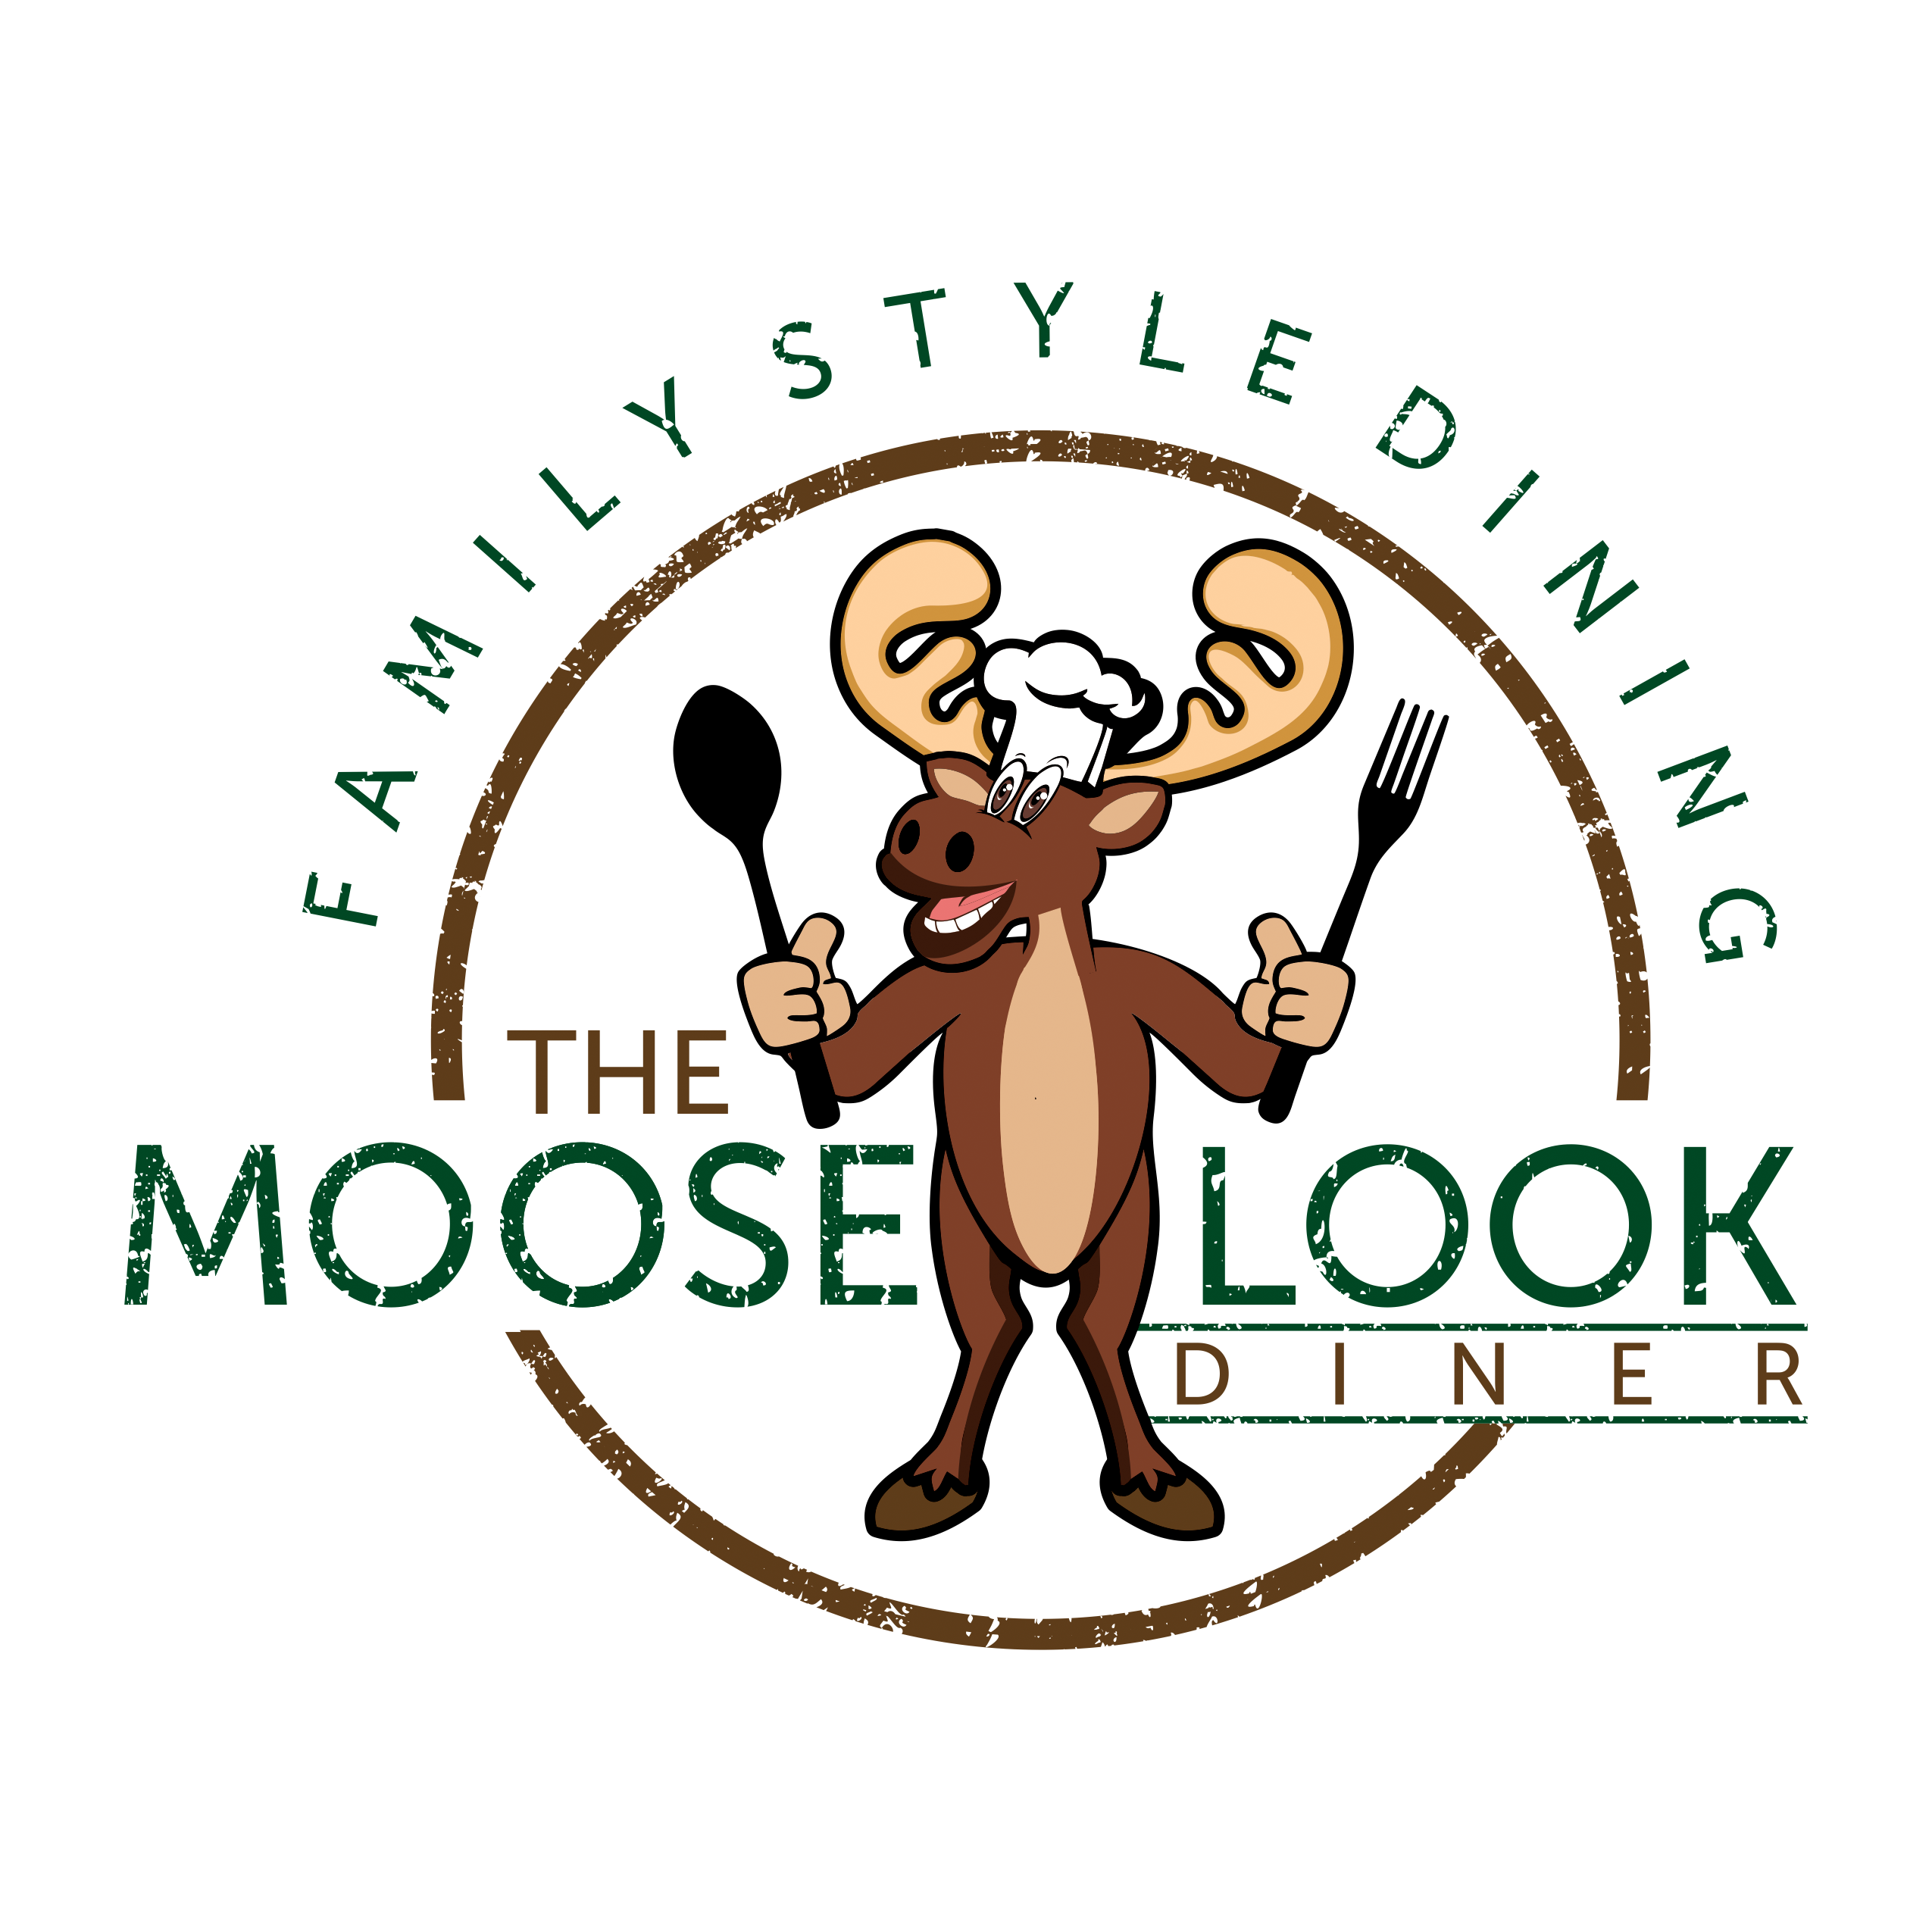  The Mooselook Diner